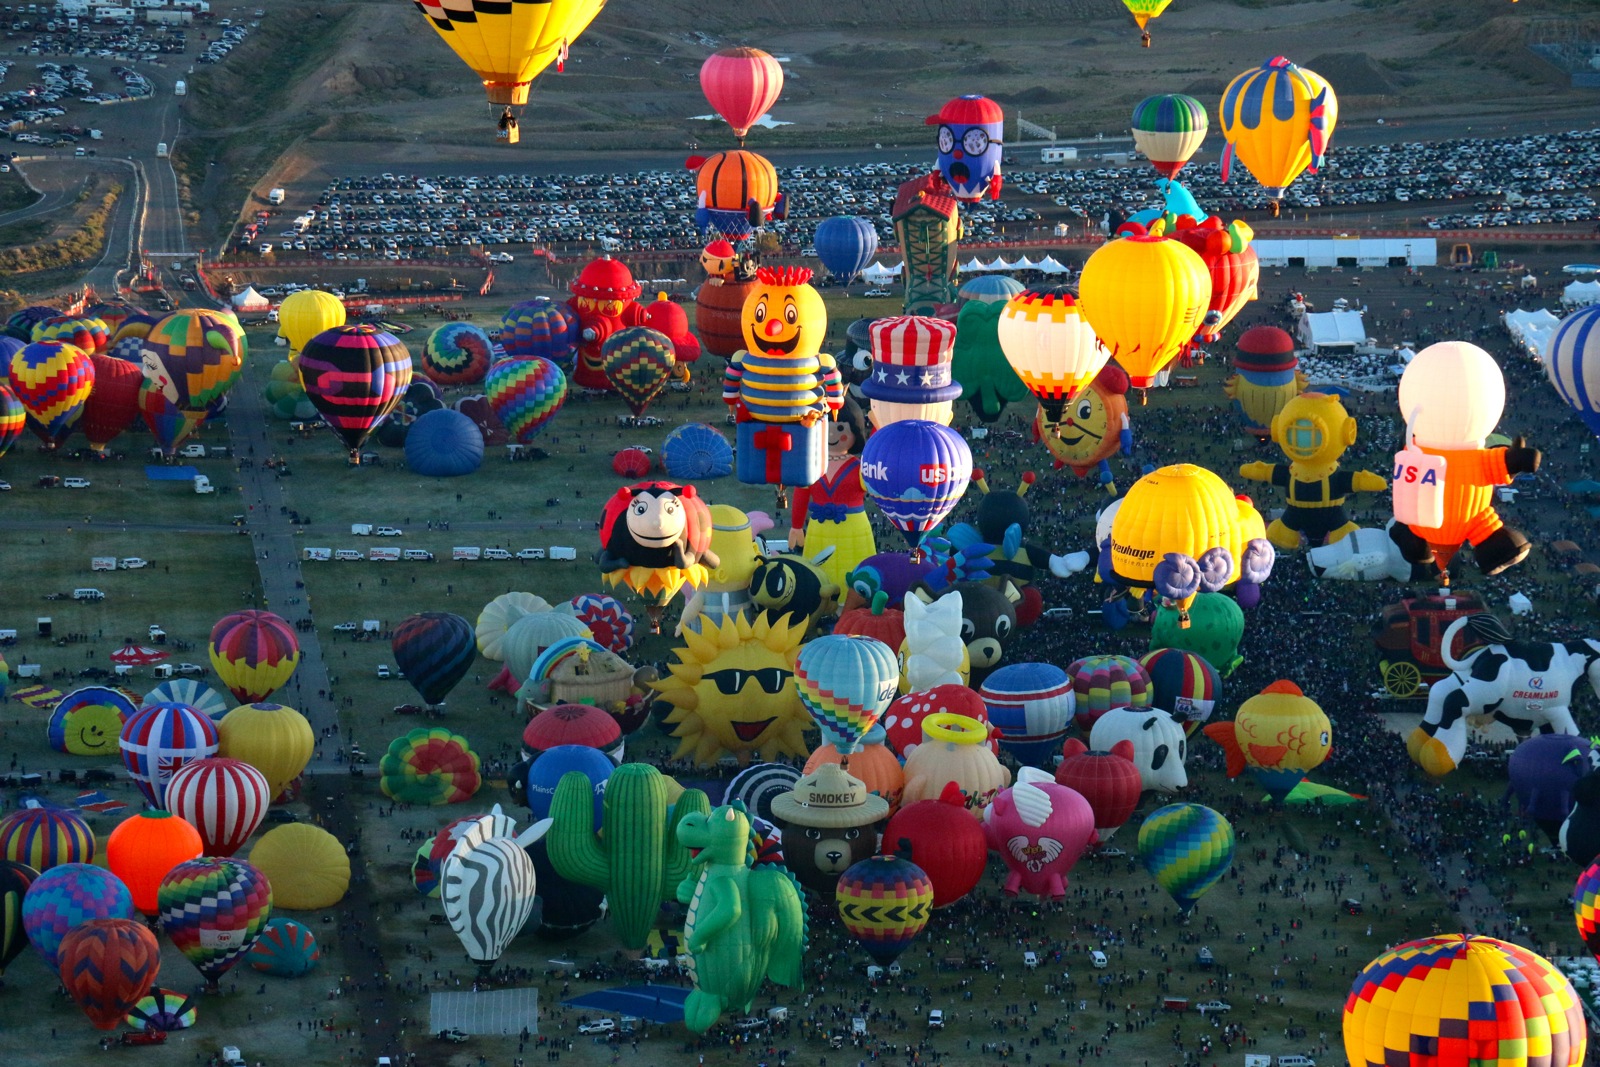 지상최대의 열기구 축제 미국 앨버커키, Albuquerque International Balloon Fiesta 네이버 블로그